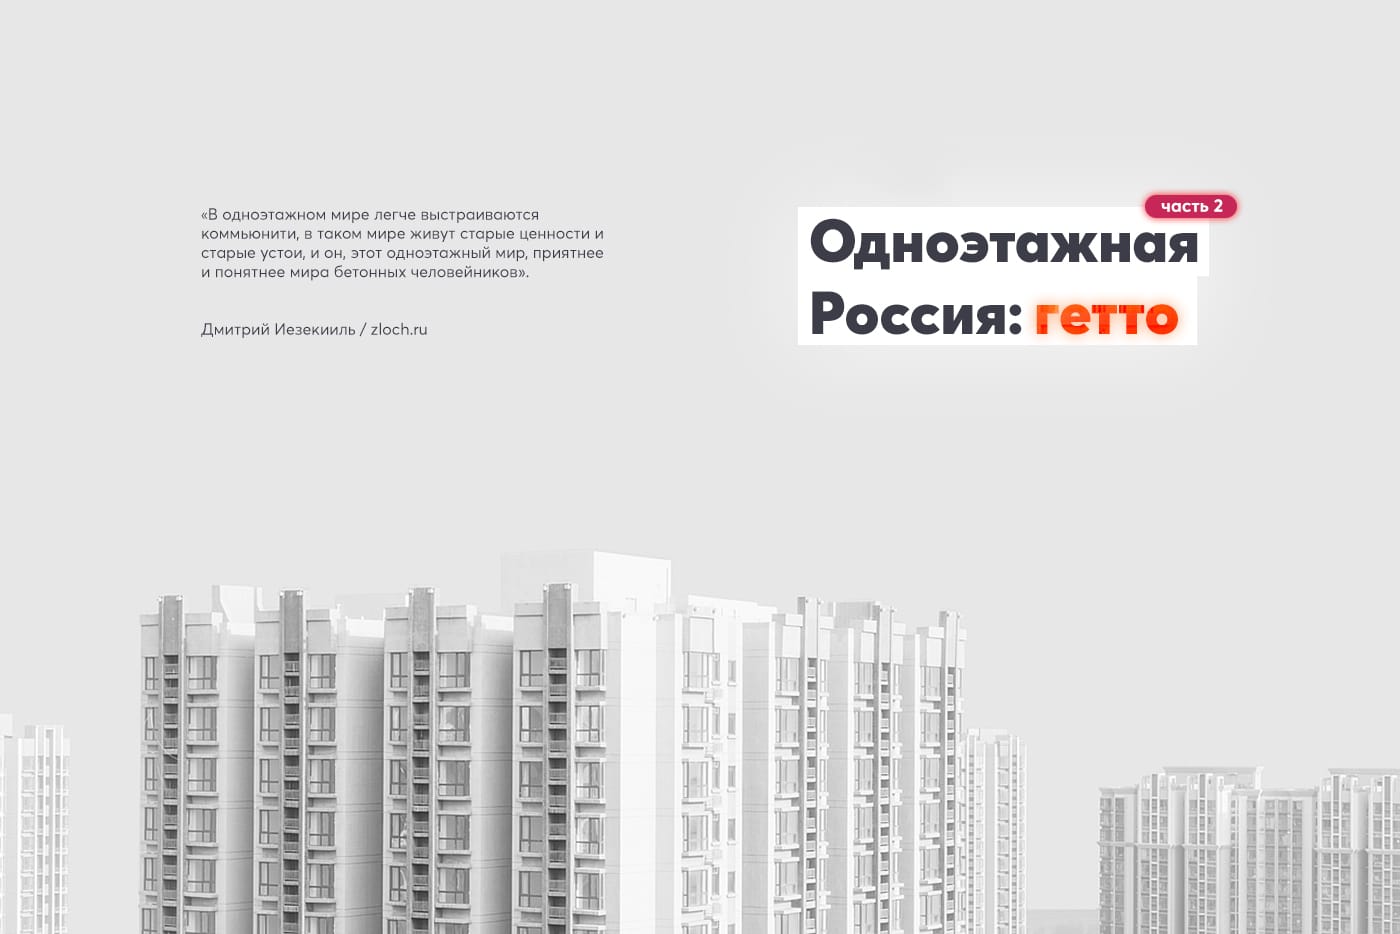 Одноэтажная Россия: гетто